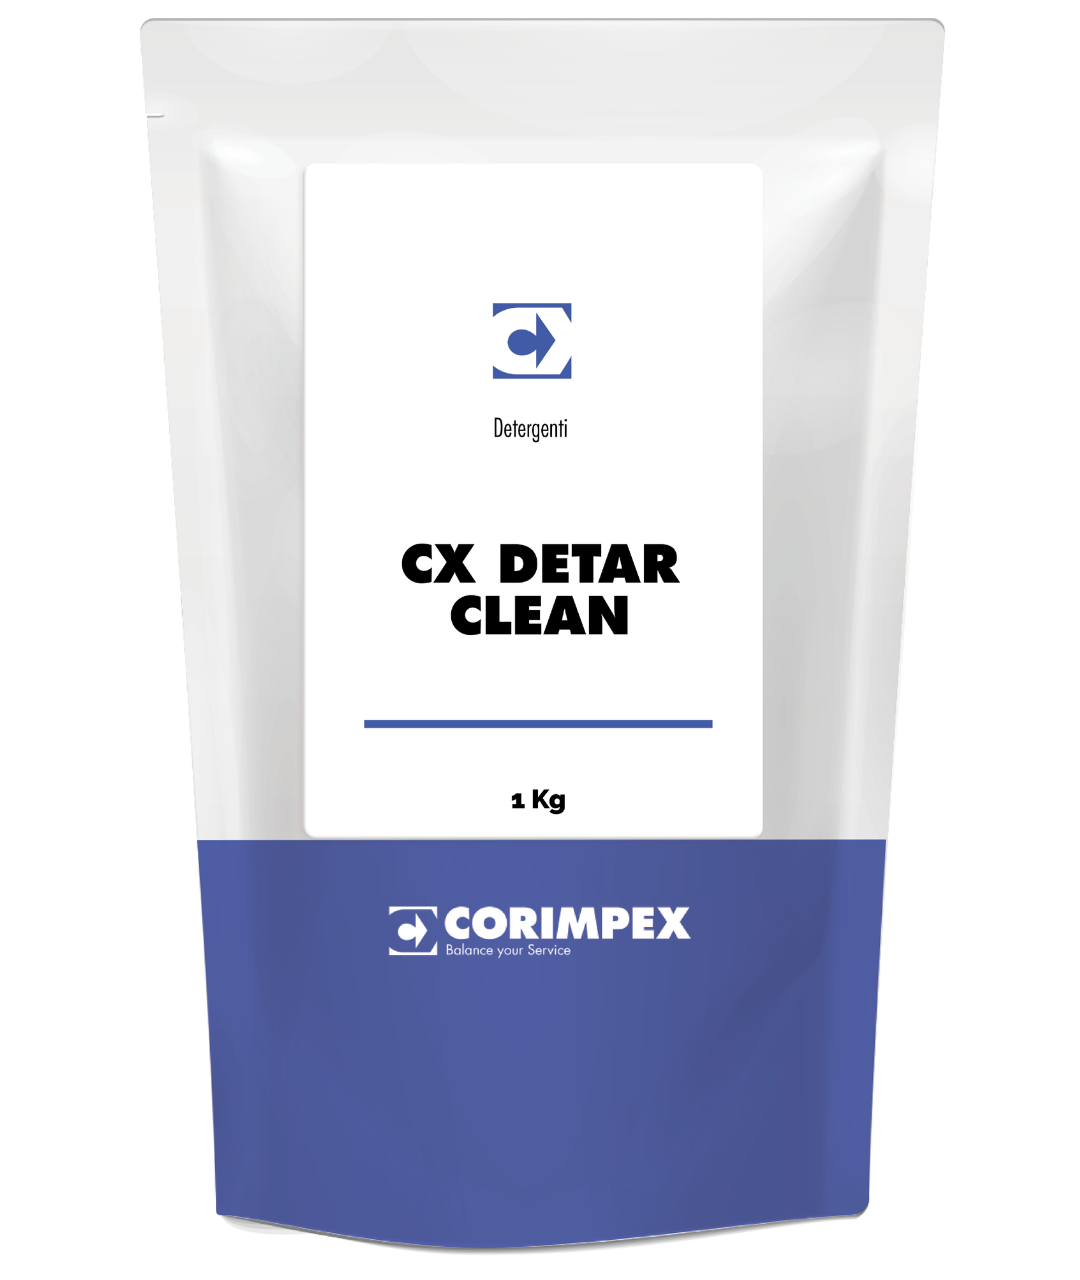 CX DETAR CLEAN 